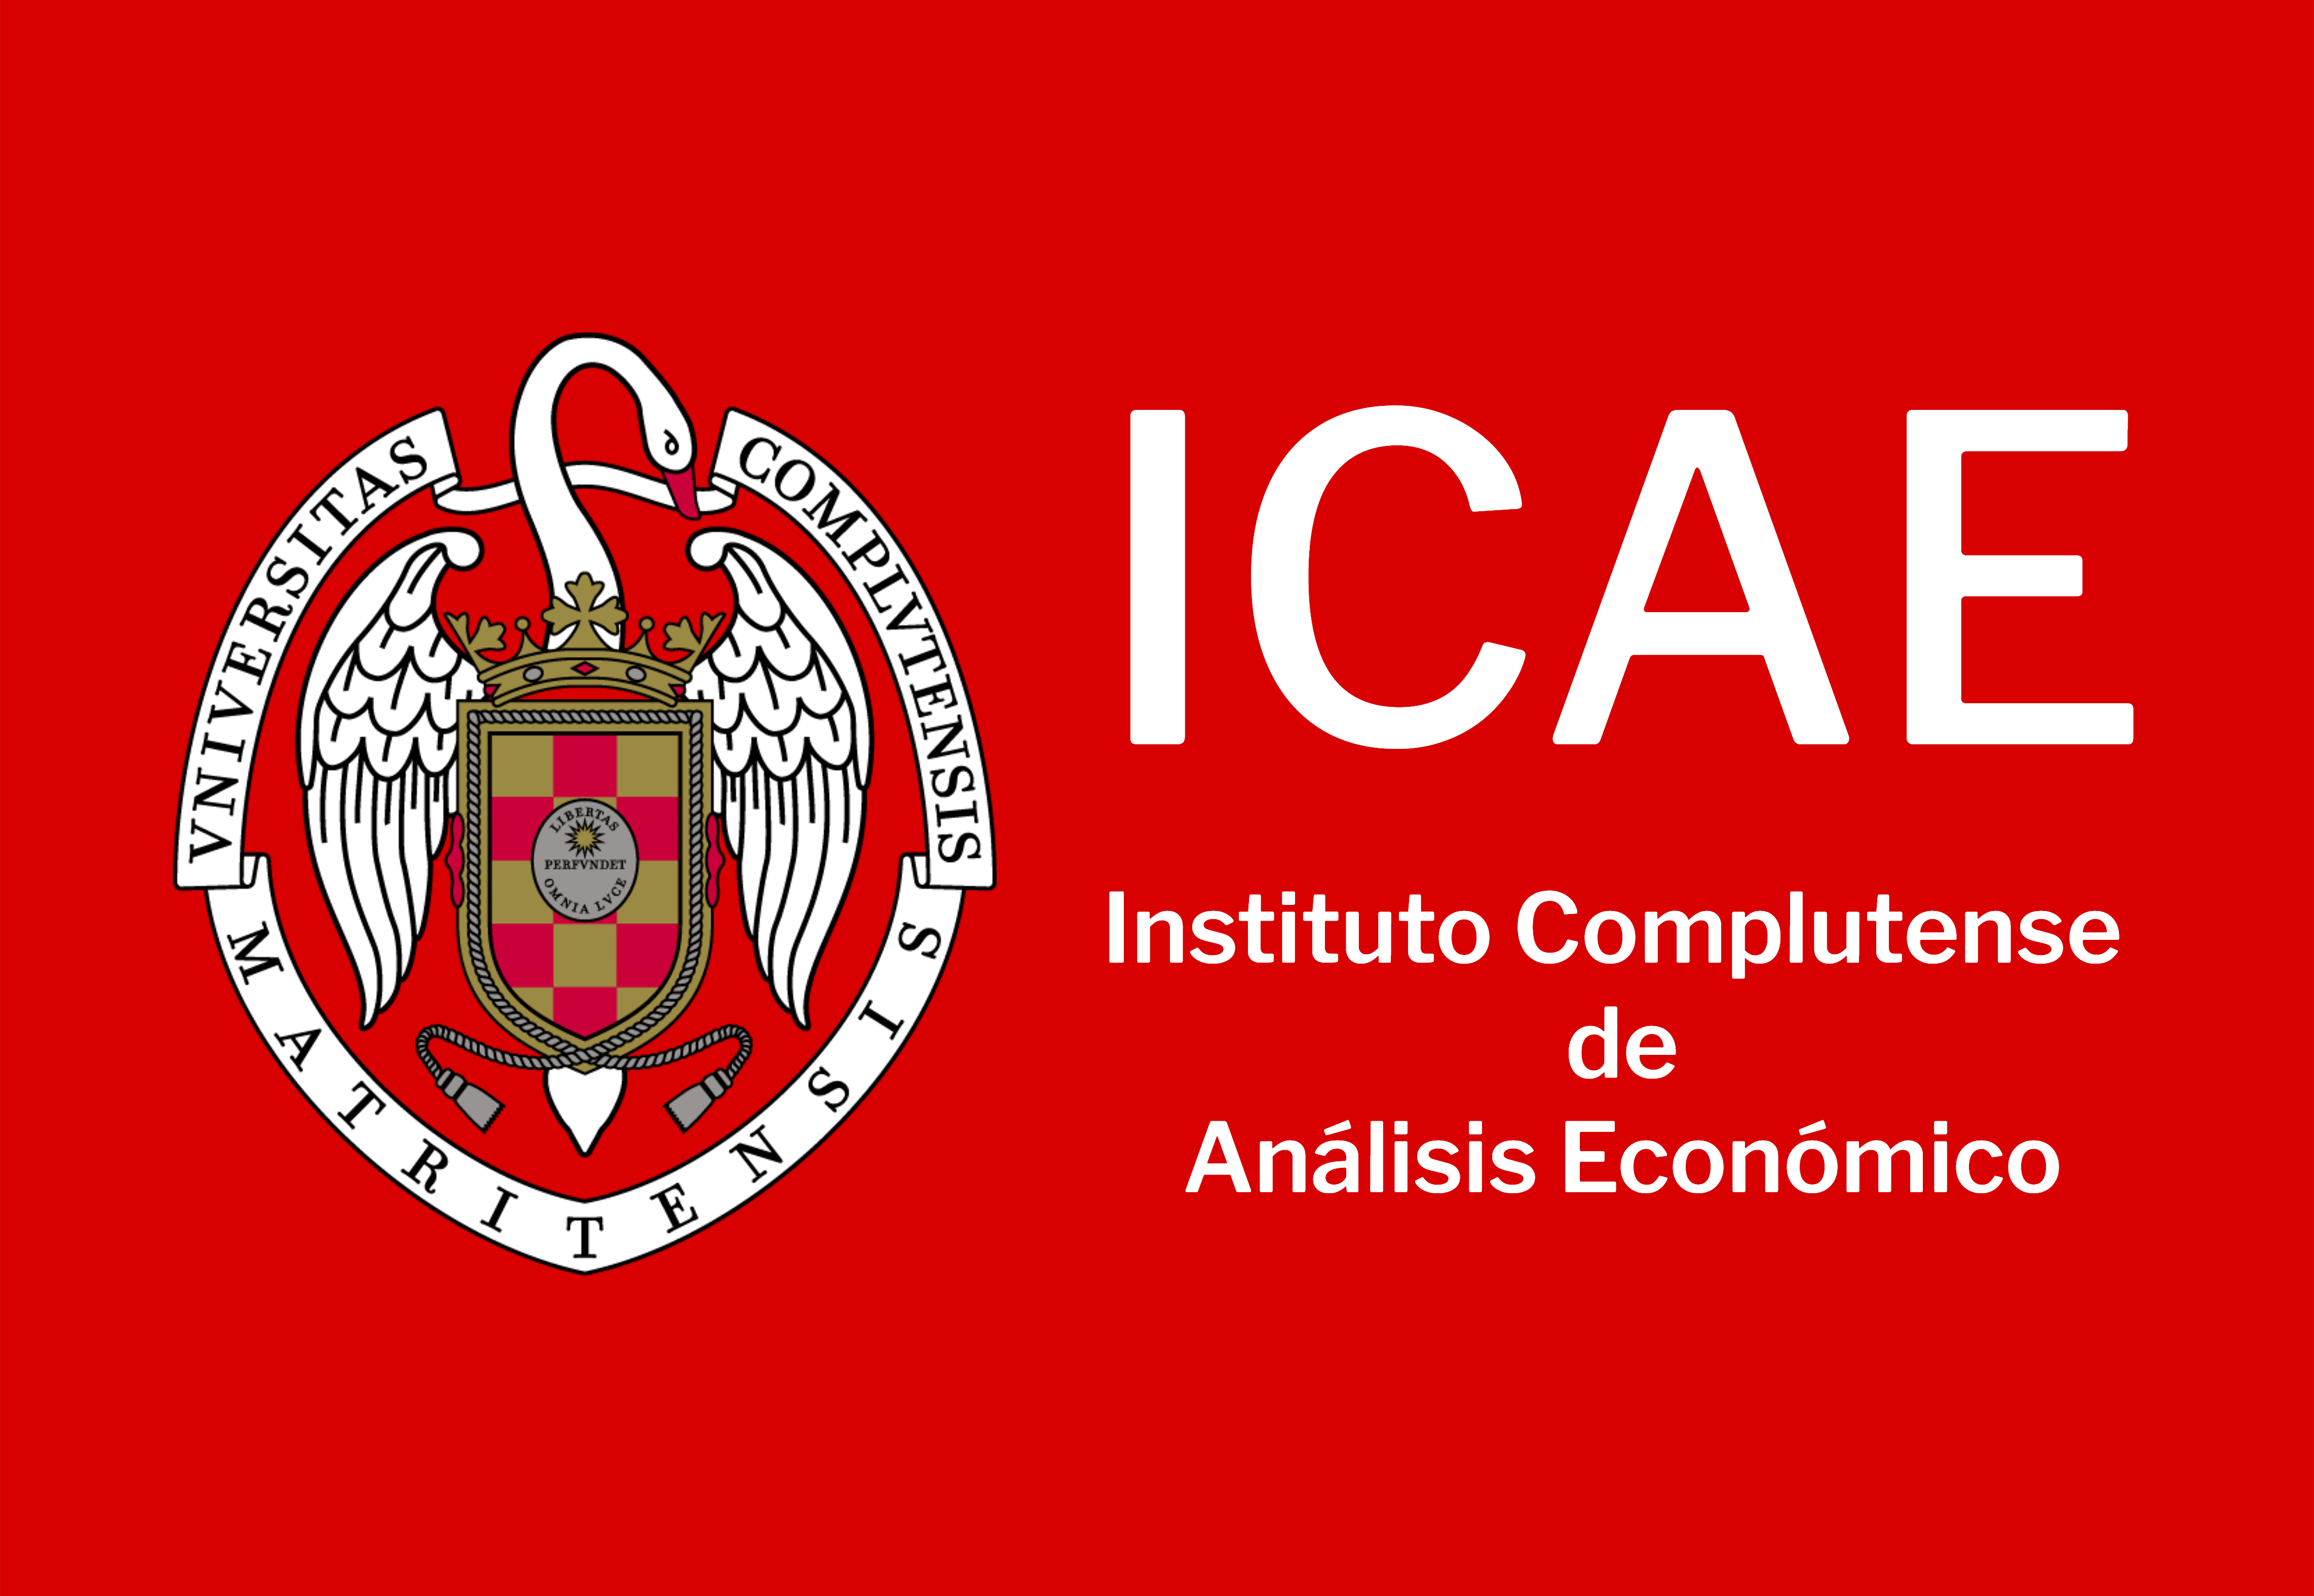 Logo ICAE 4.567 x 3.150 px JPG